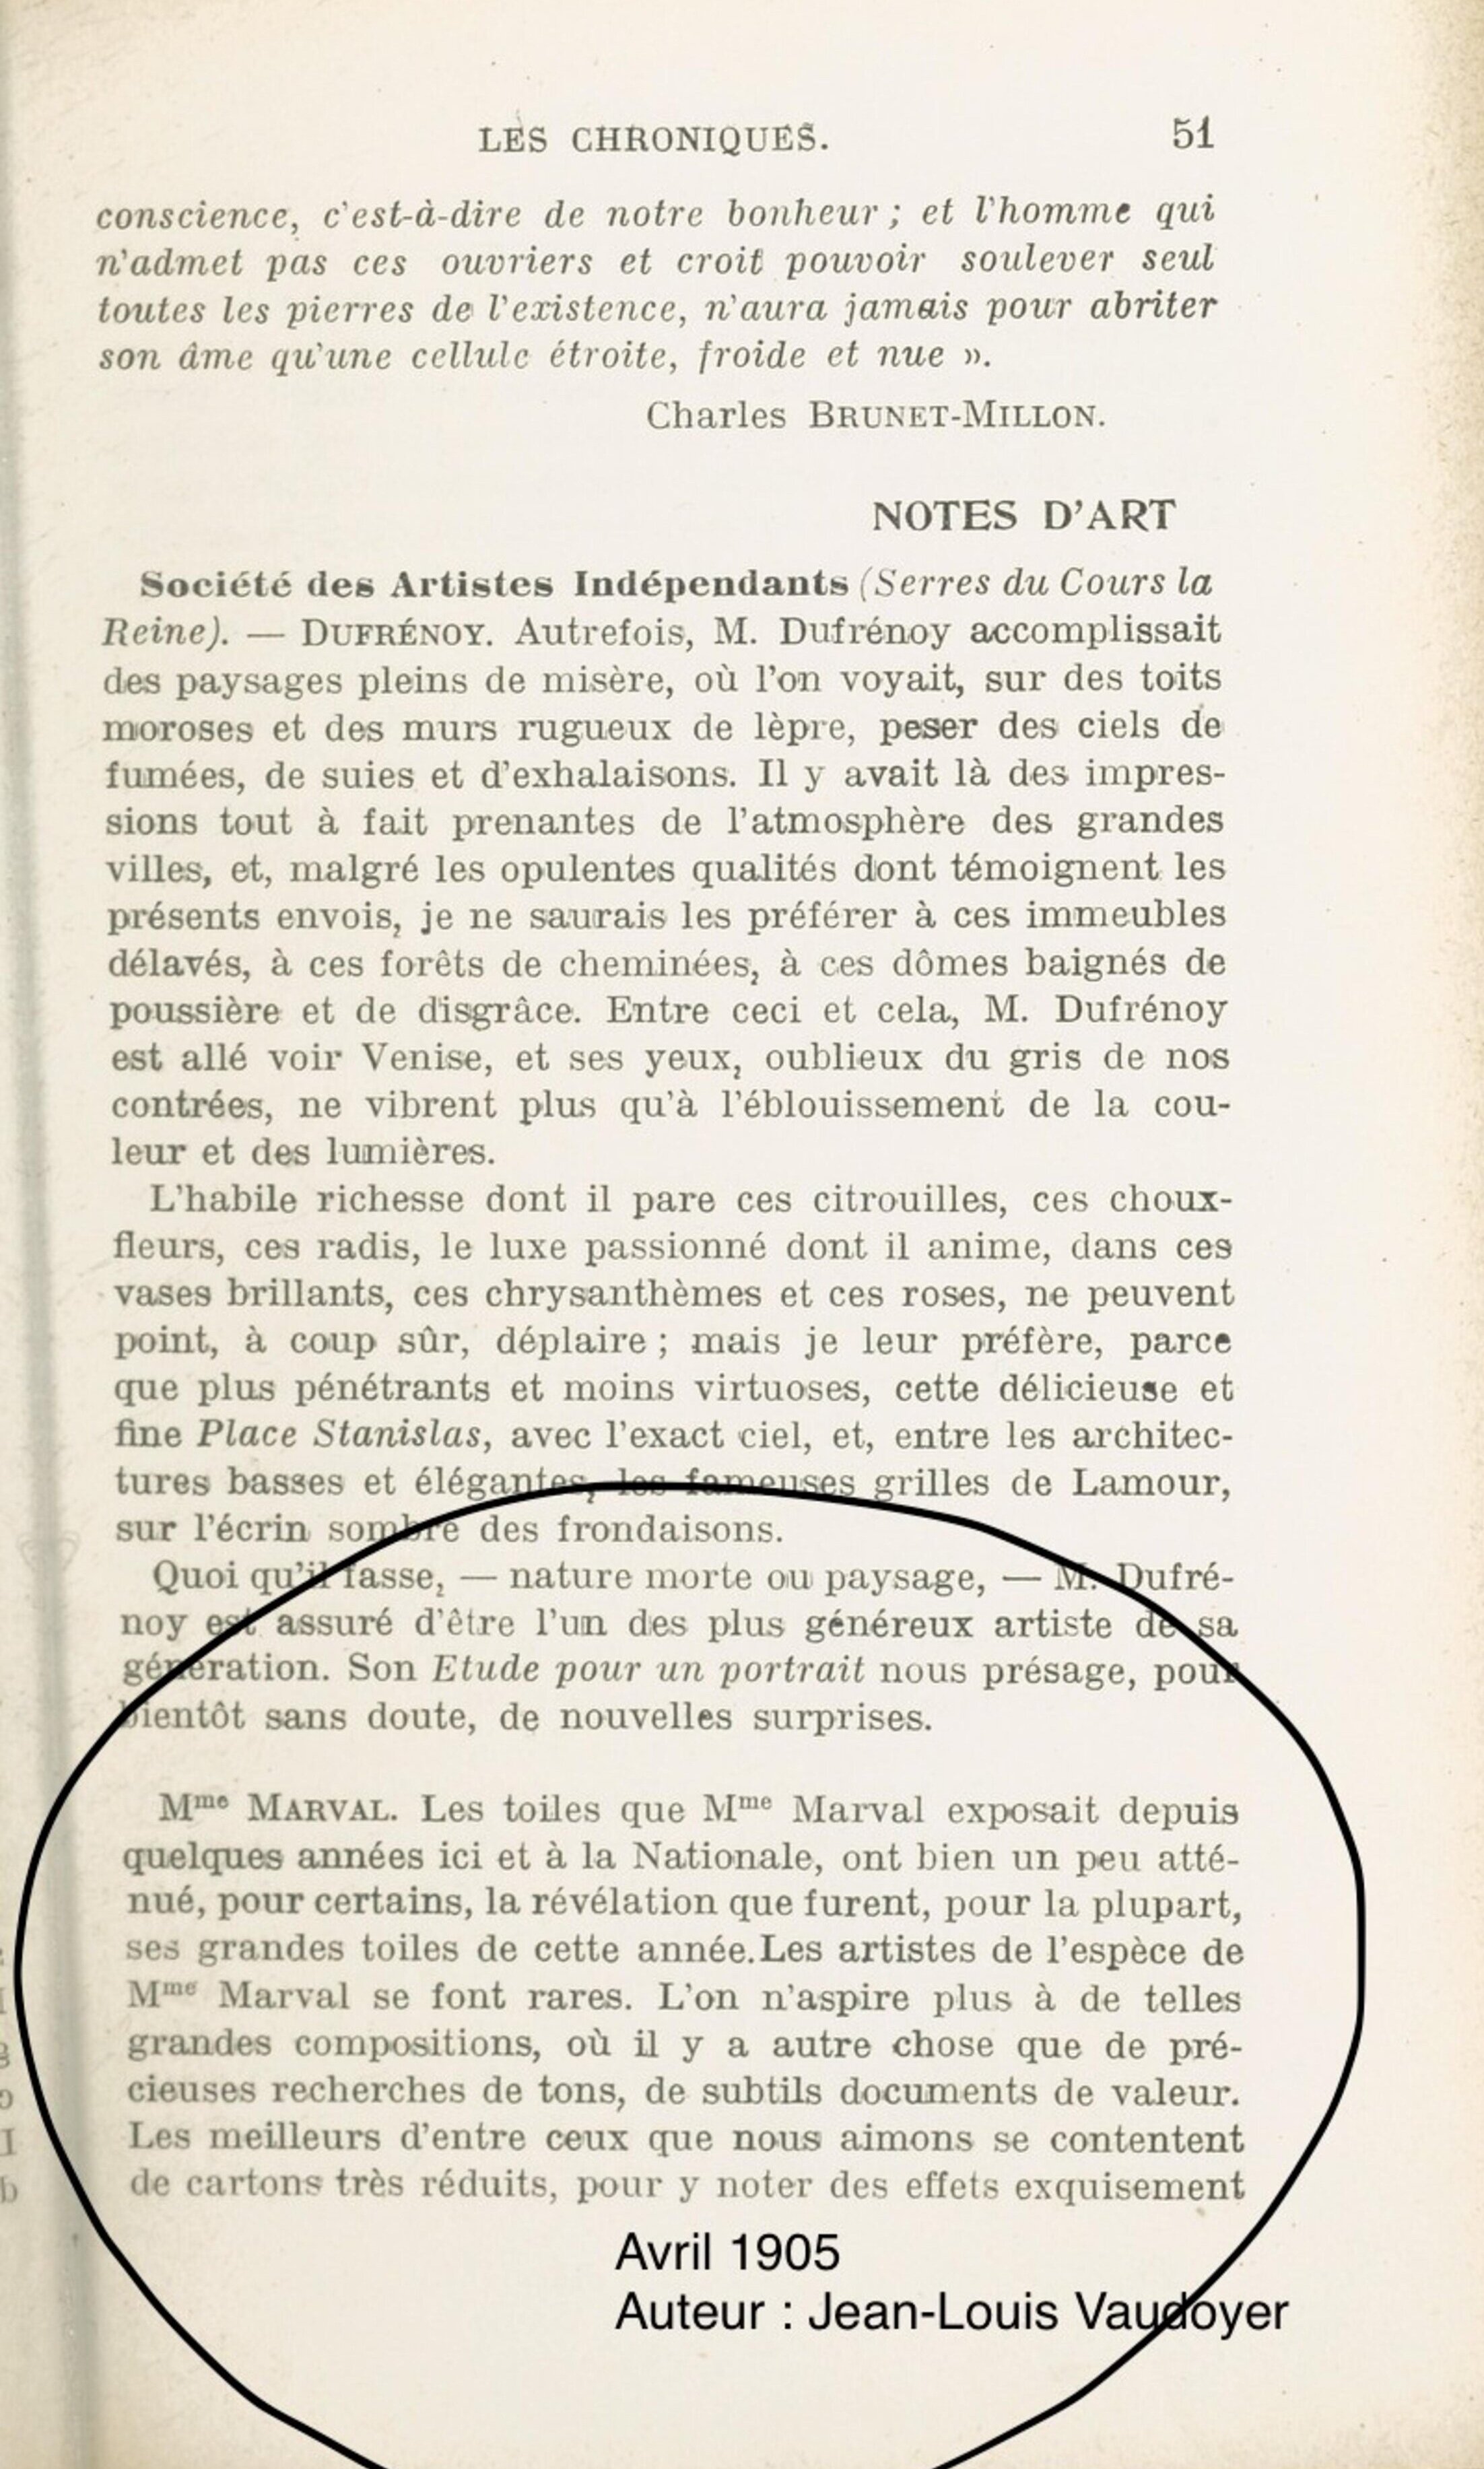 Les Essais, avril 1905